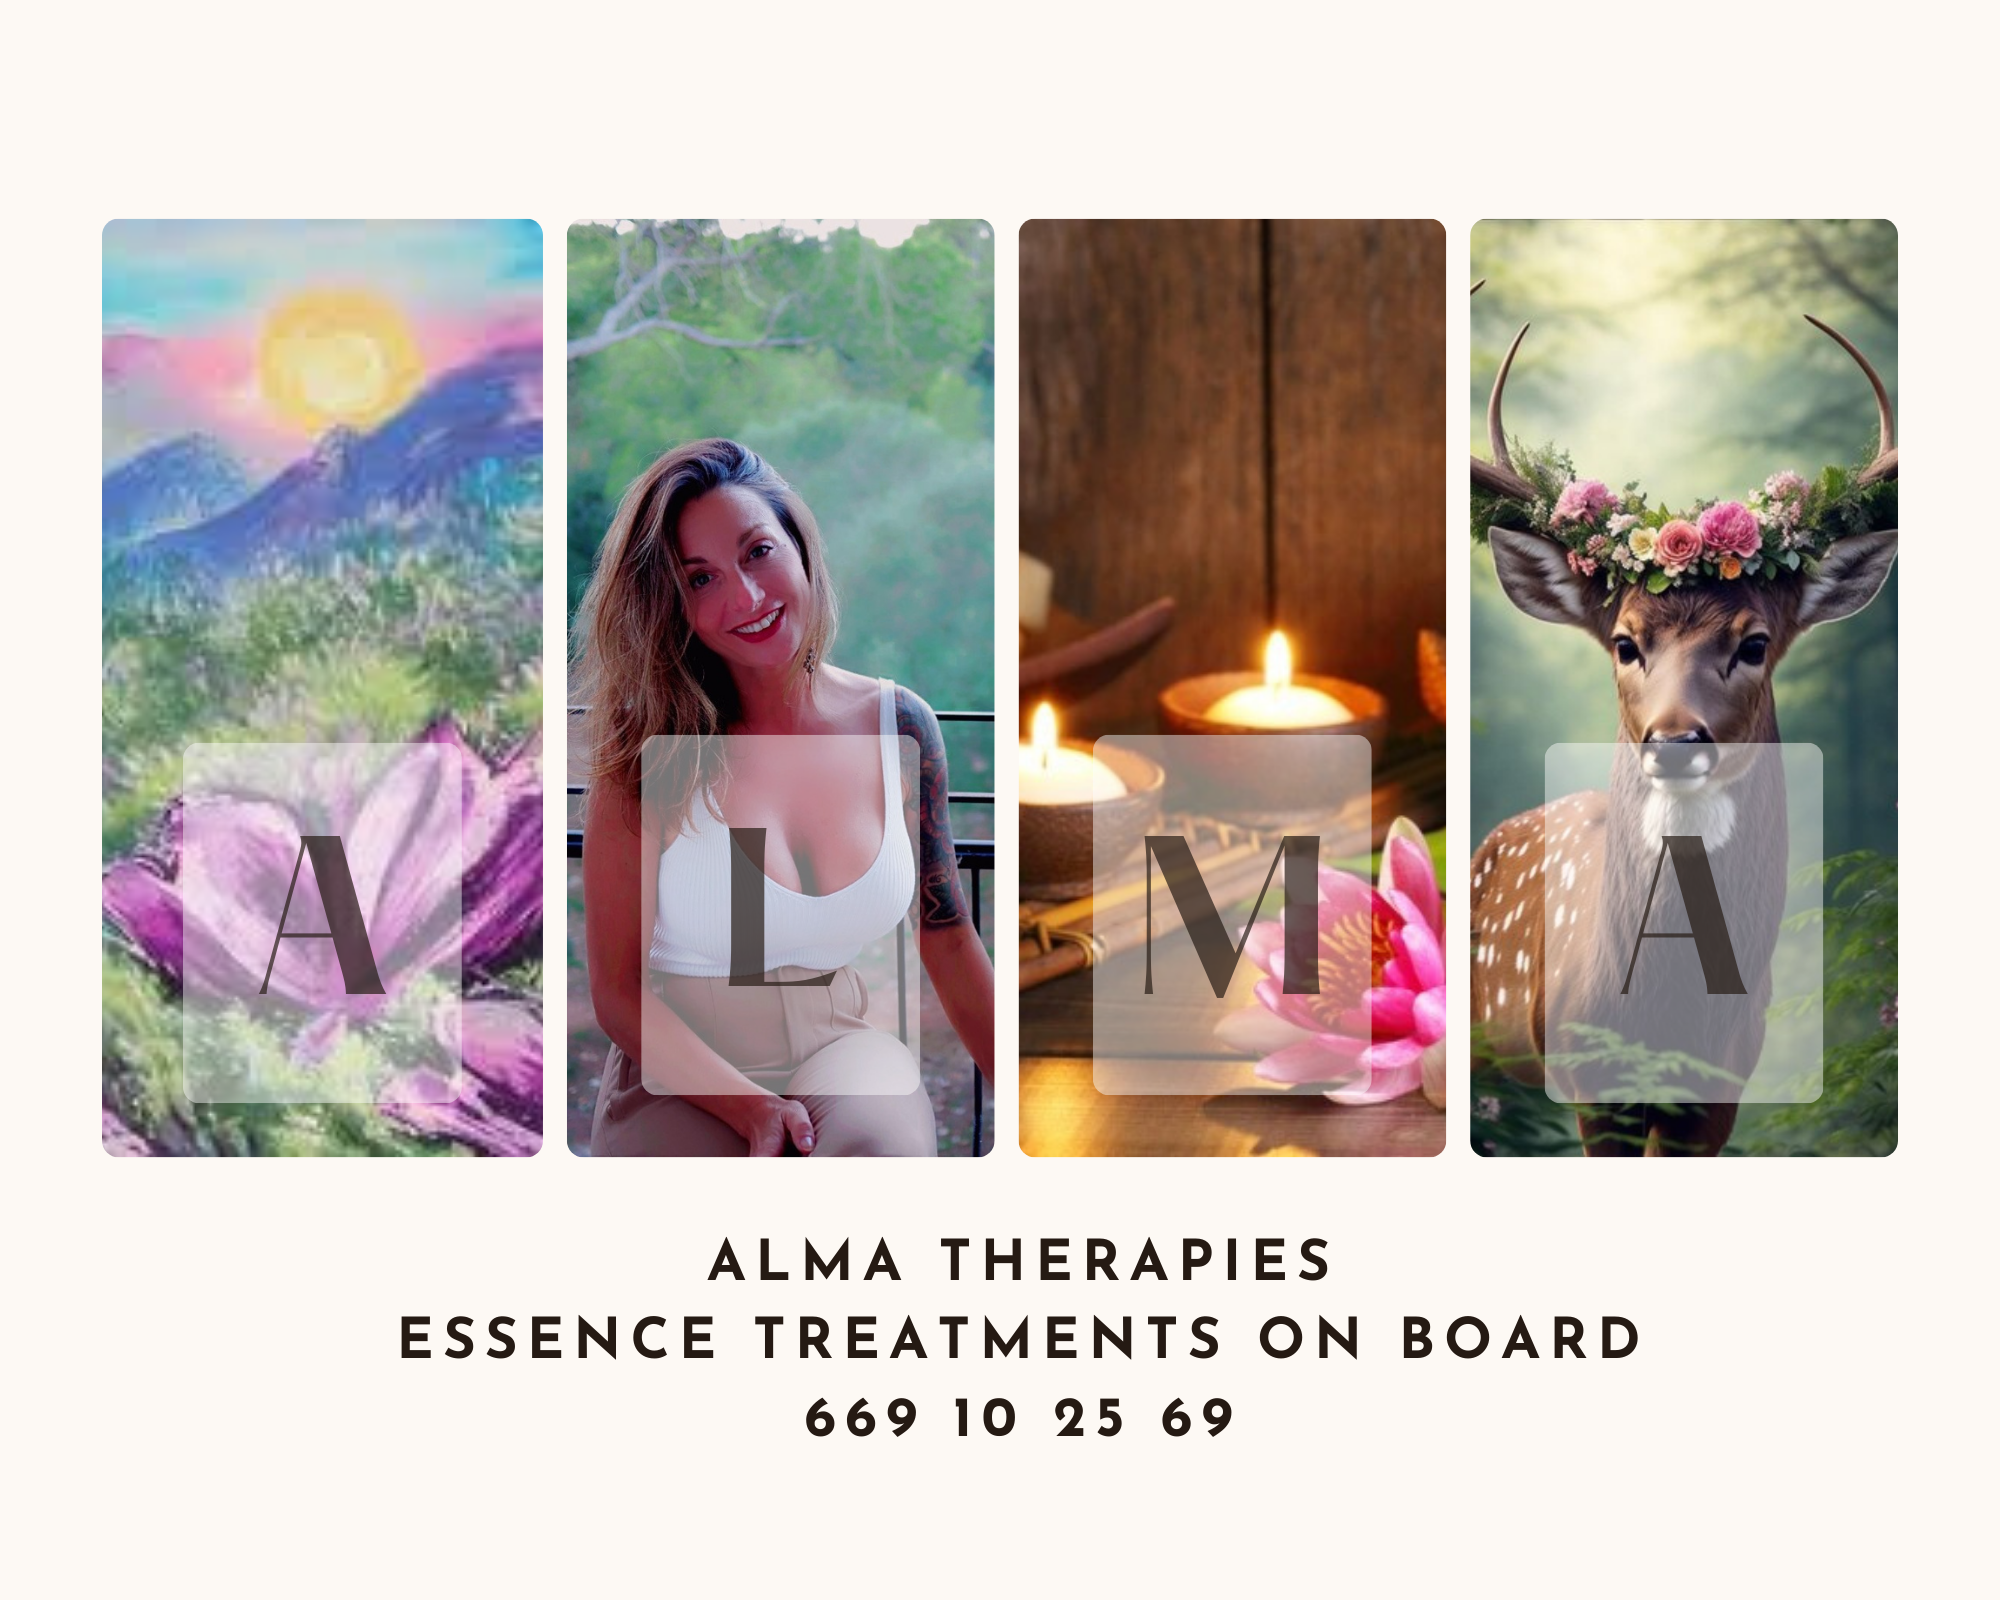 Alma Therapies